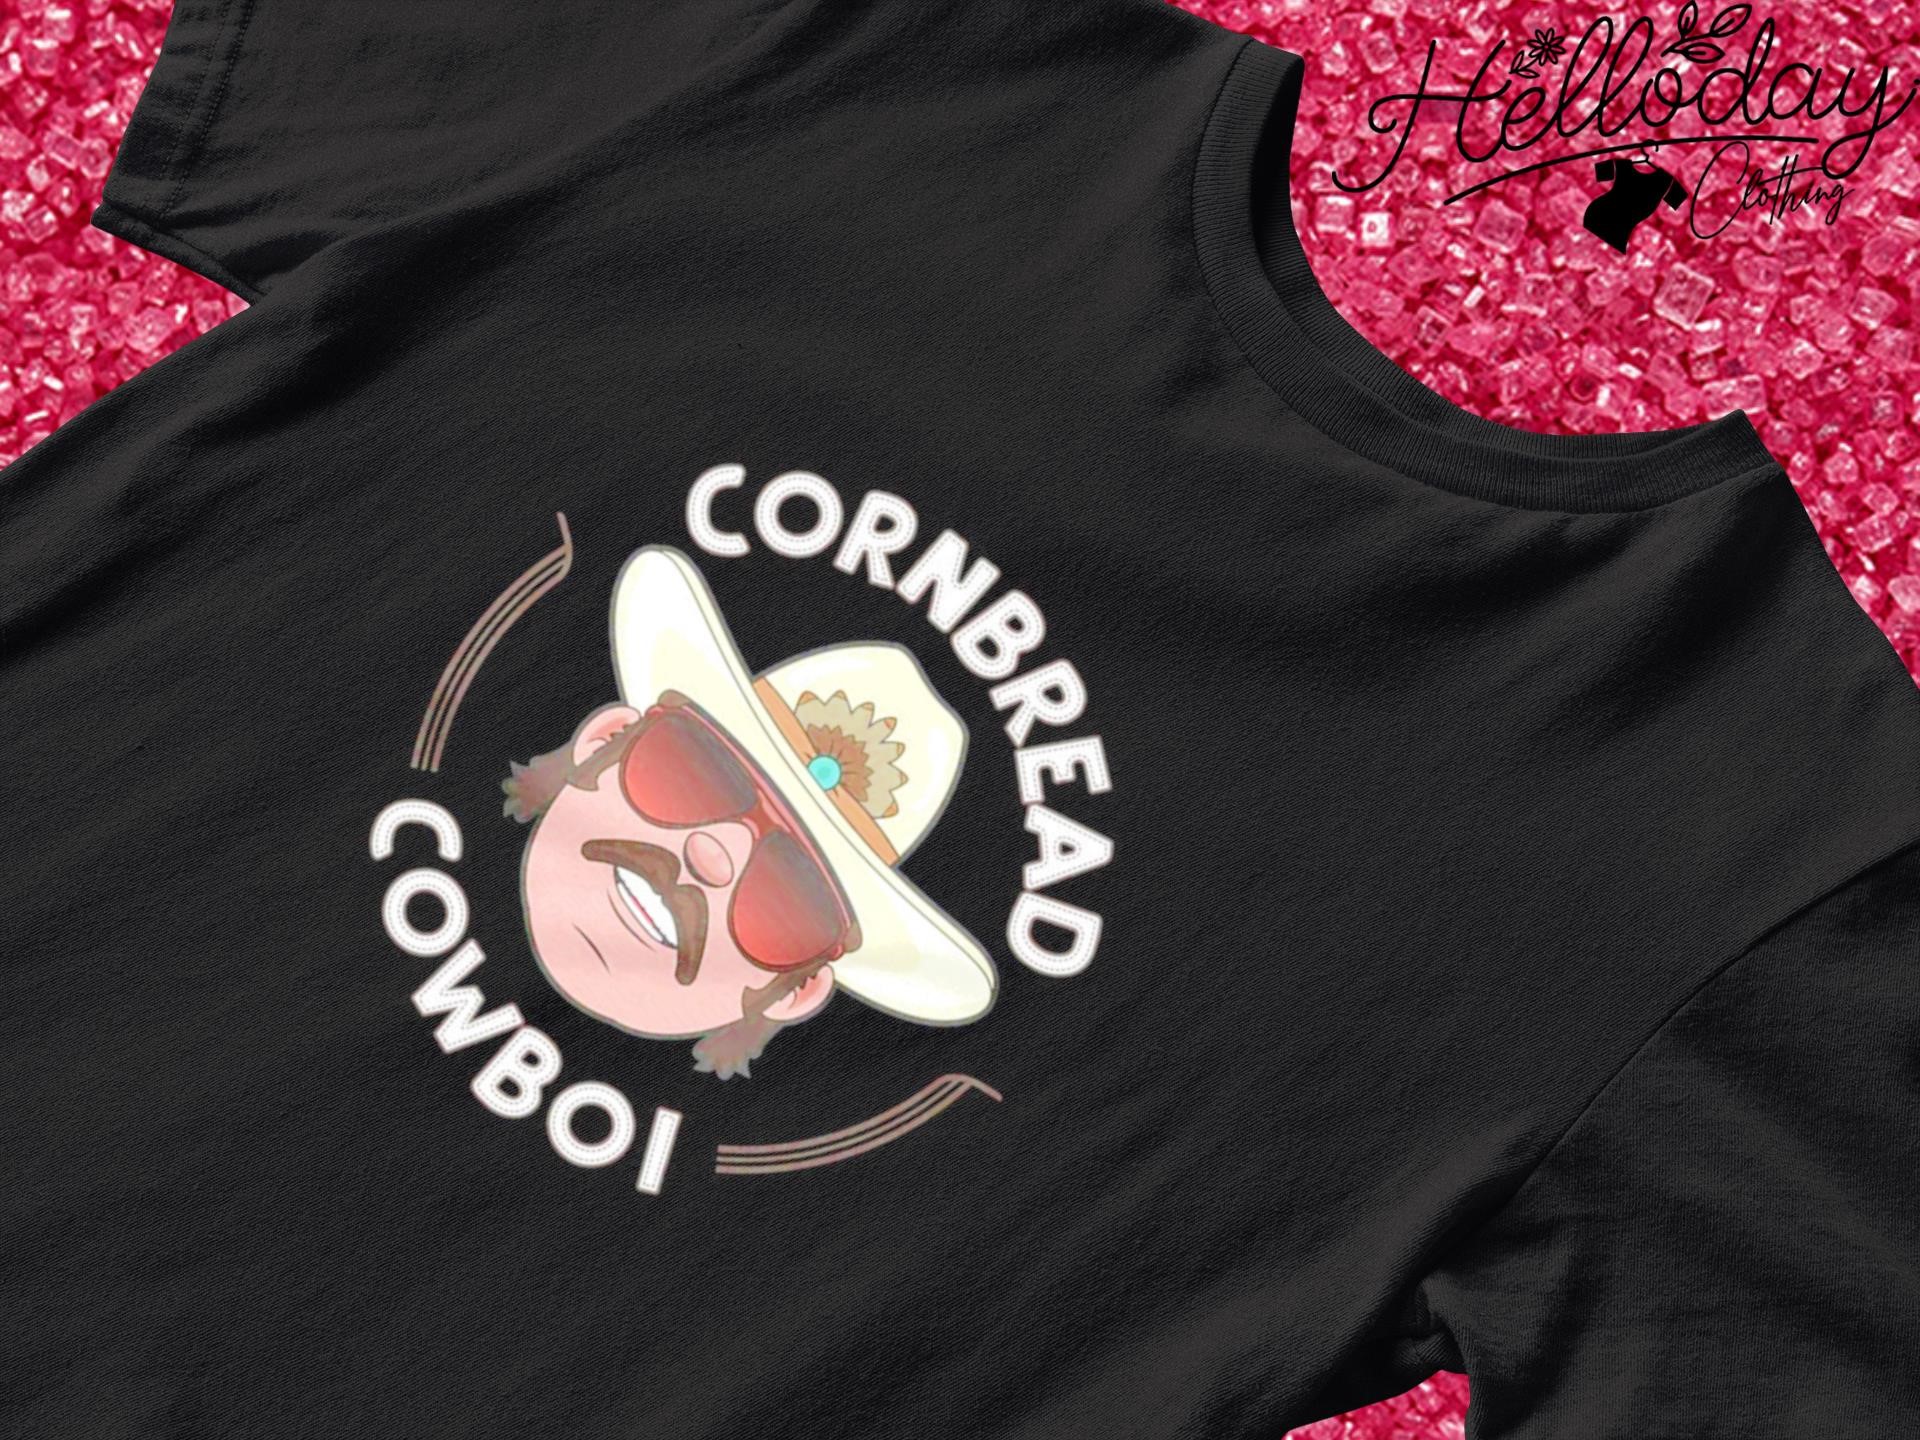 cornbread cowboi shirt